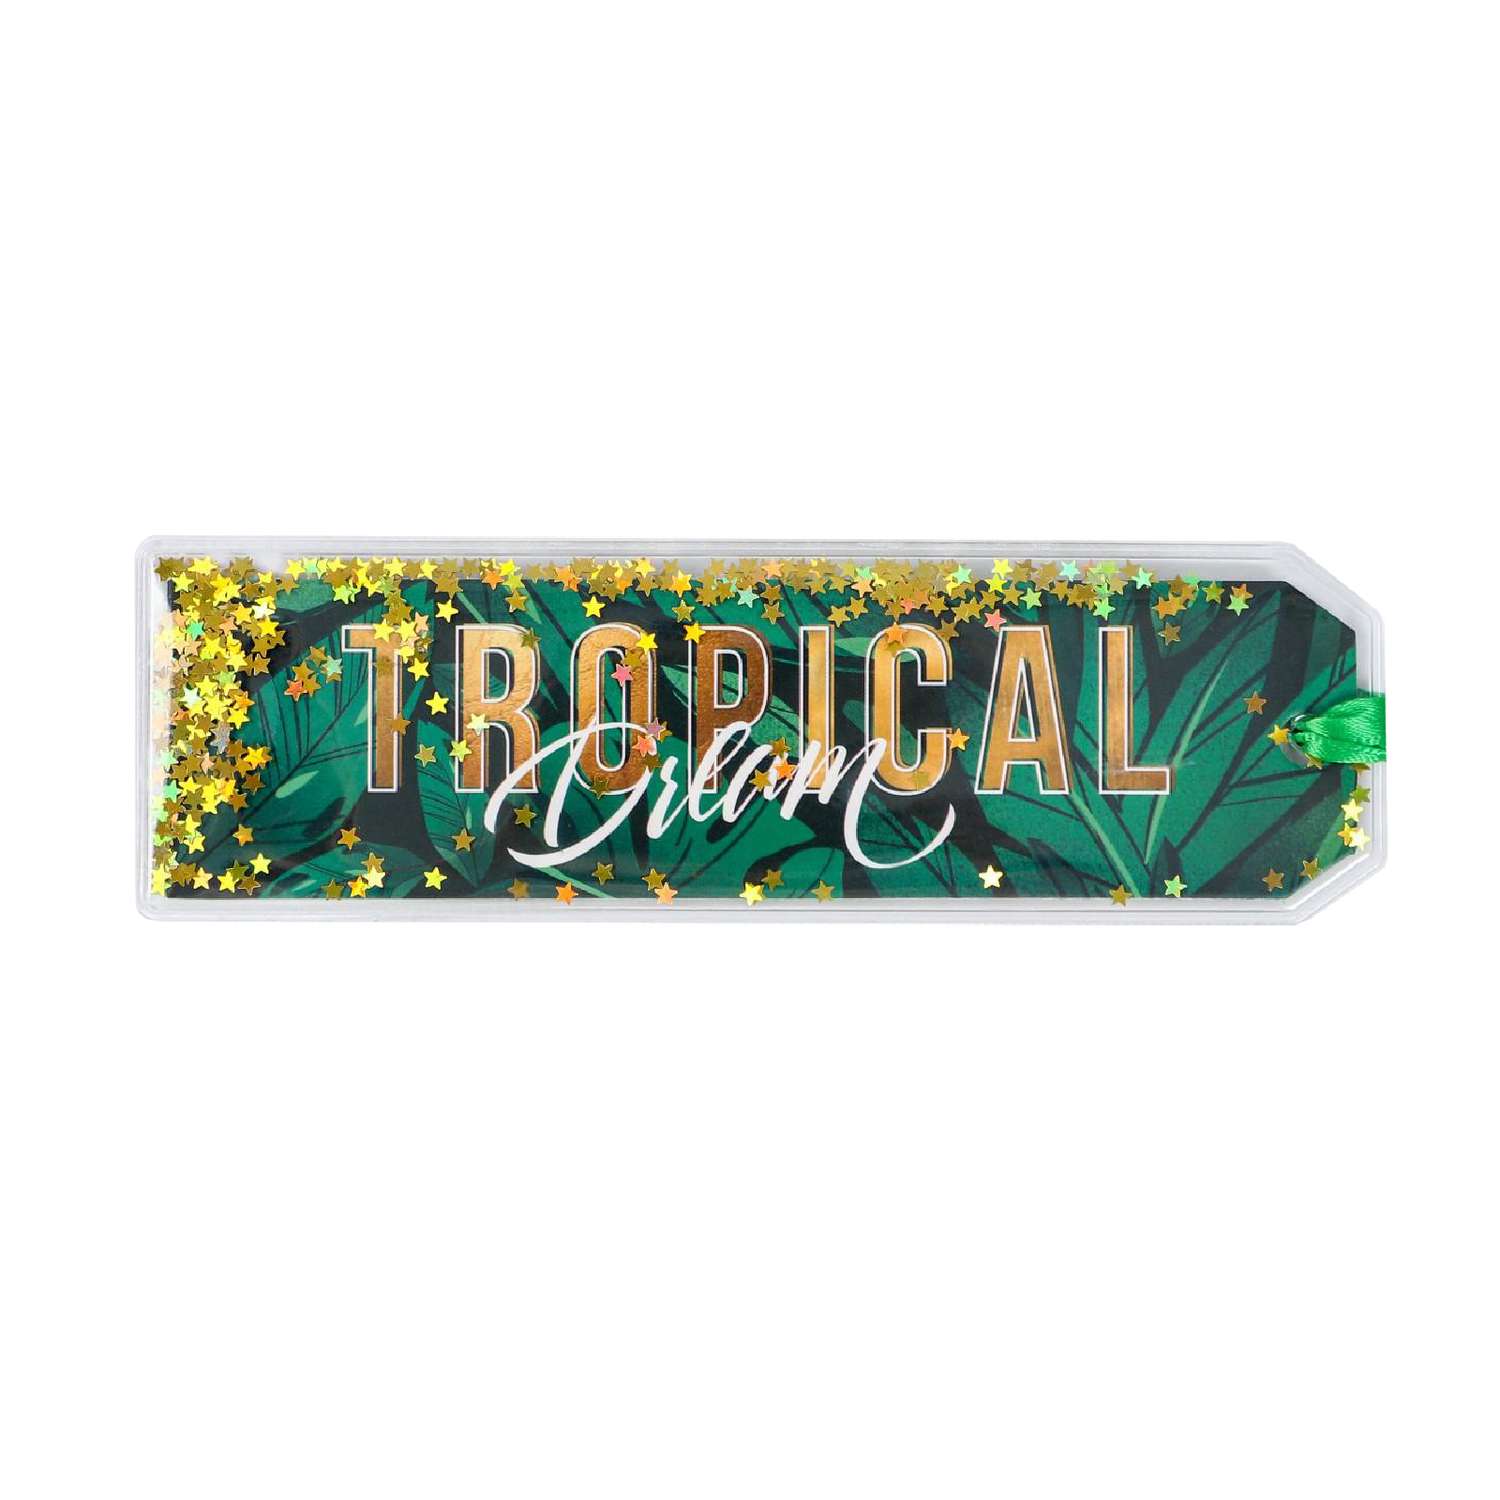 Закладка ArtFox с сухим шейкером Tropical dream - фото 1